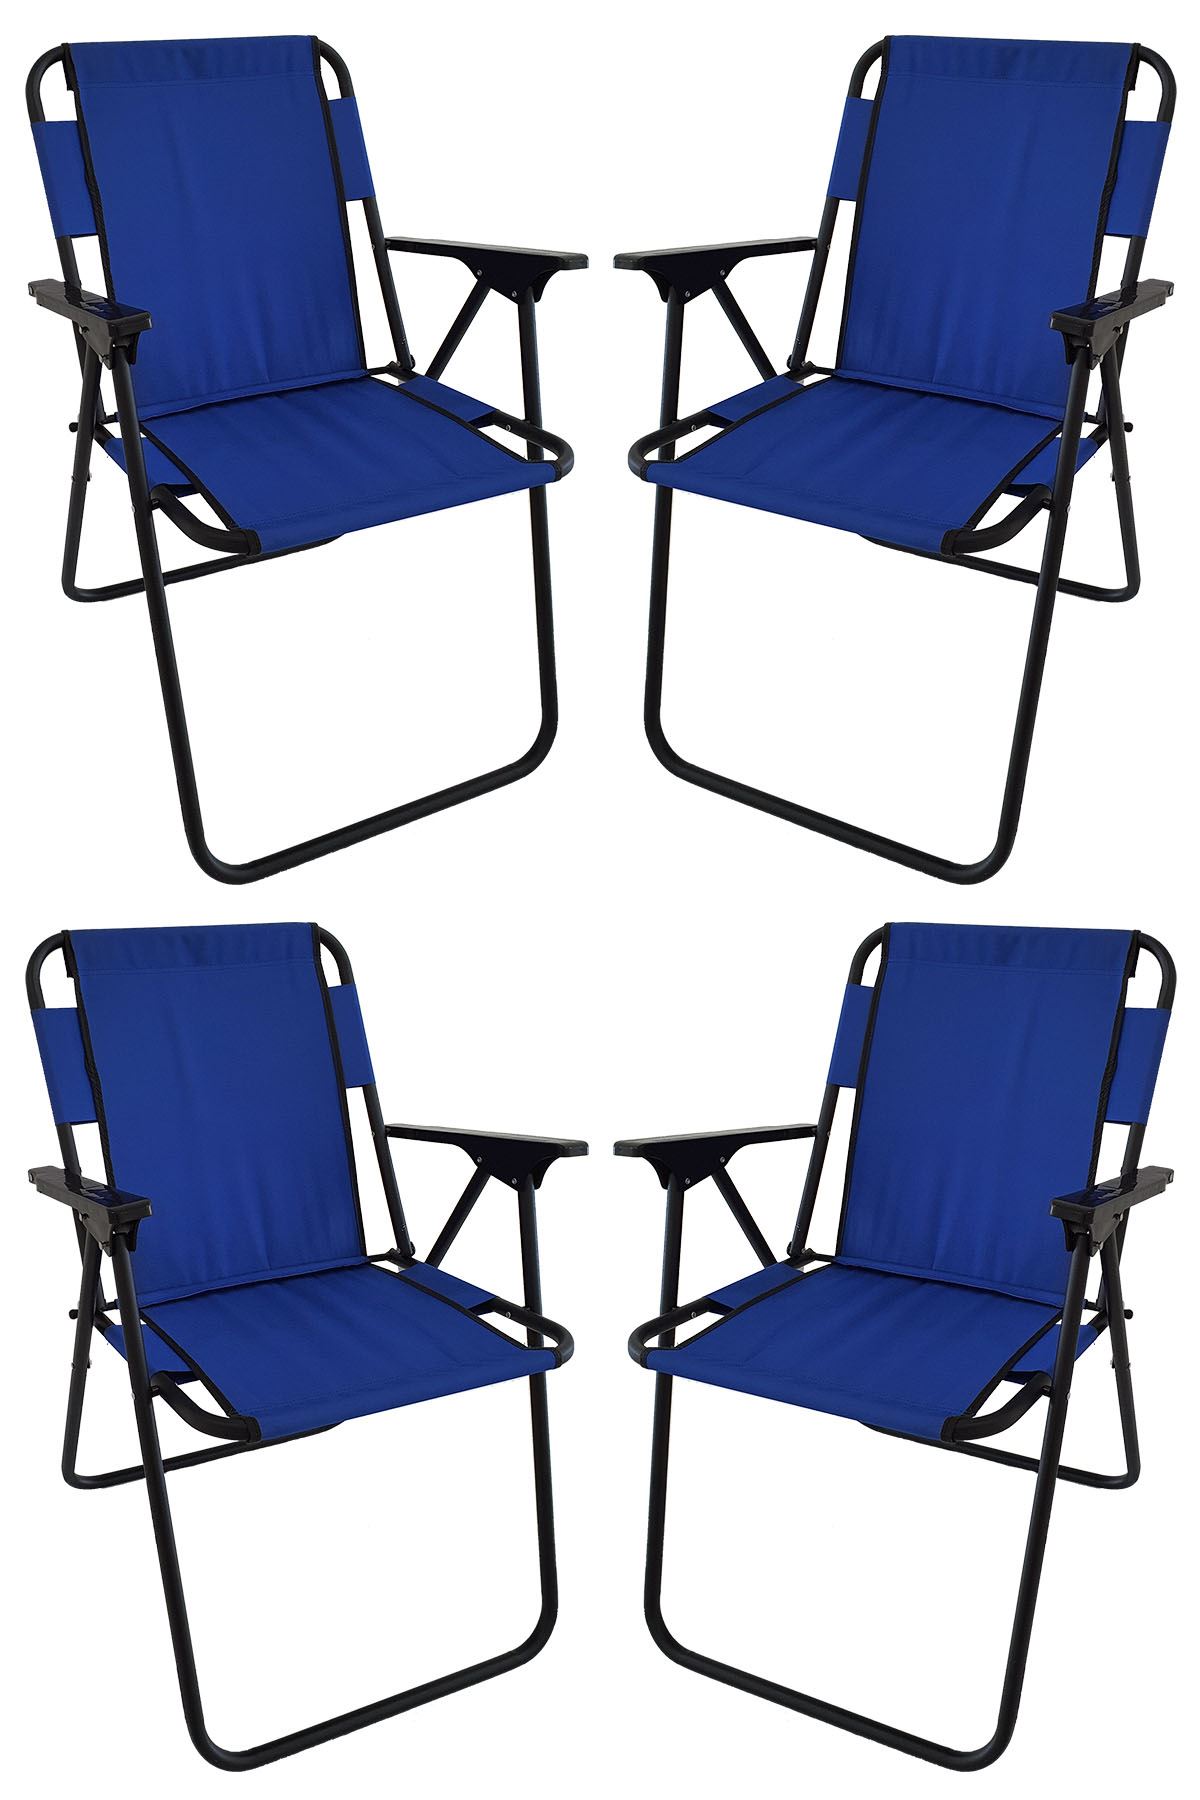 Bofigo 60X80 Çam Desenli Katlanır Masa + 4 Adet Katlanır Sandalye Kamp Seti Bahçe Takımı Mavi